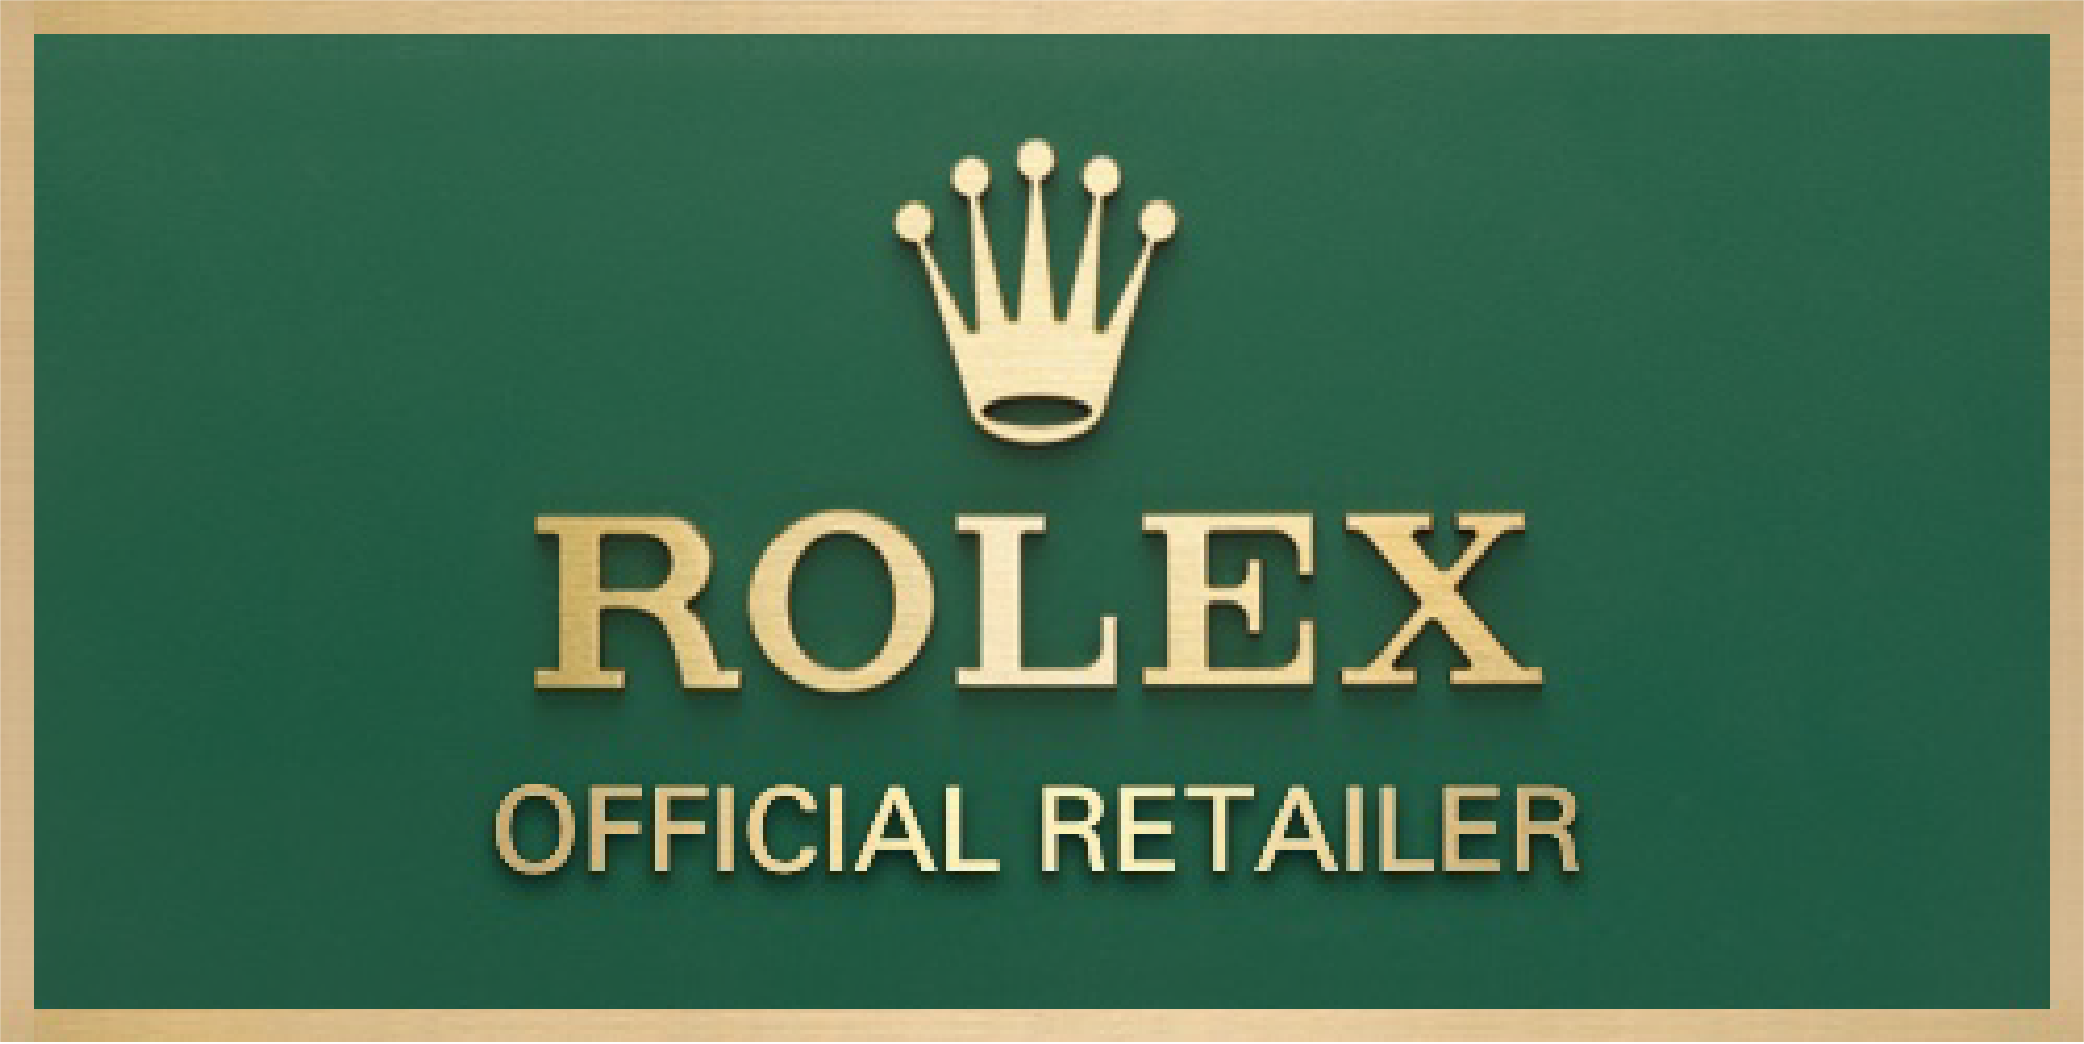 Rolex-retailer-plaque-500x250 en-02